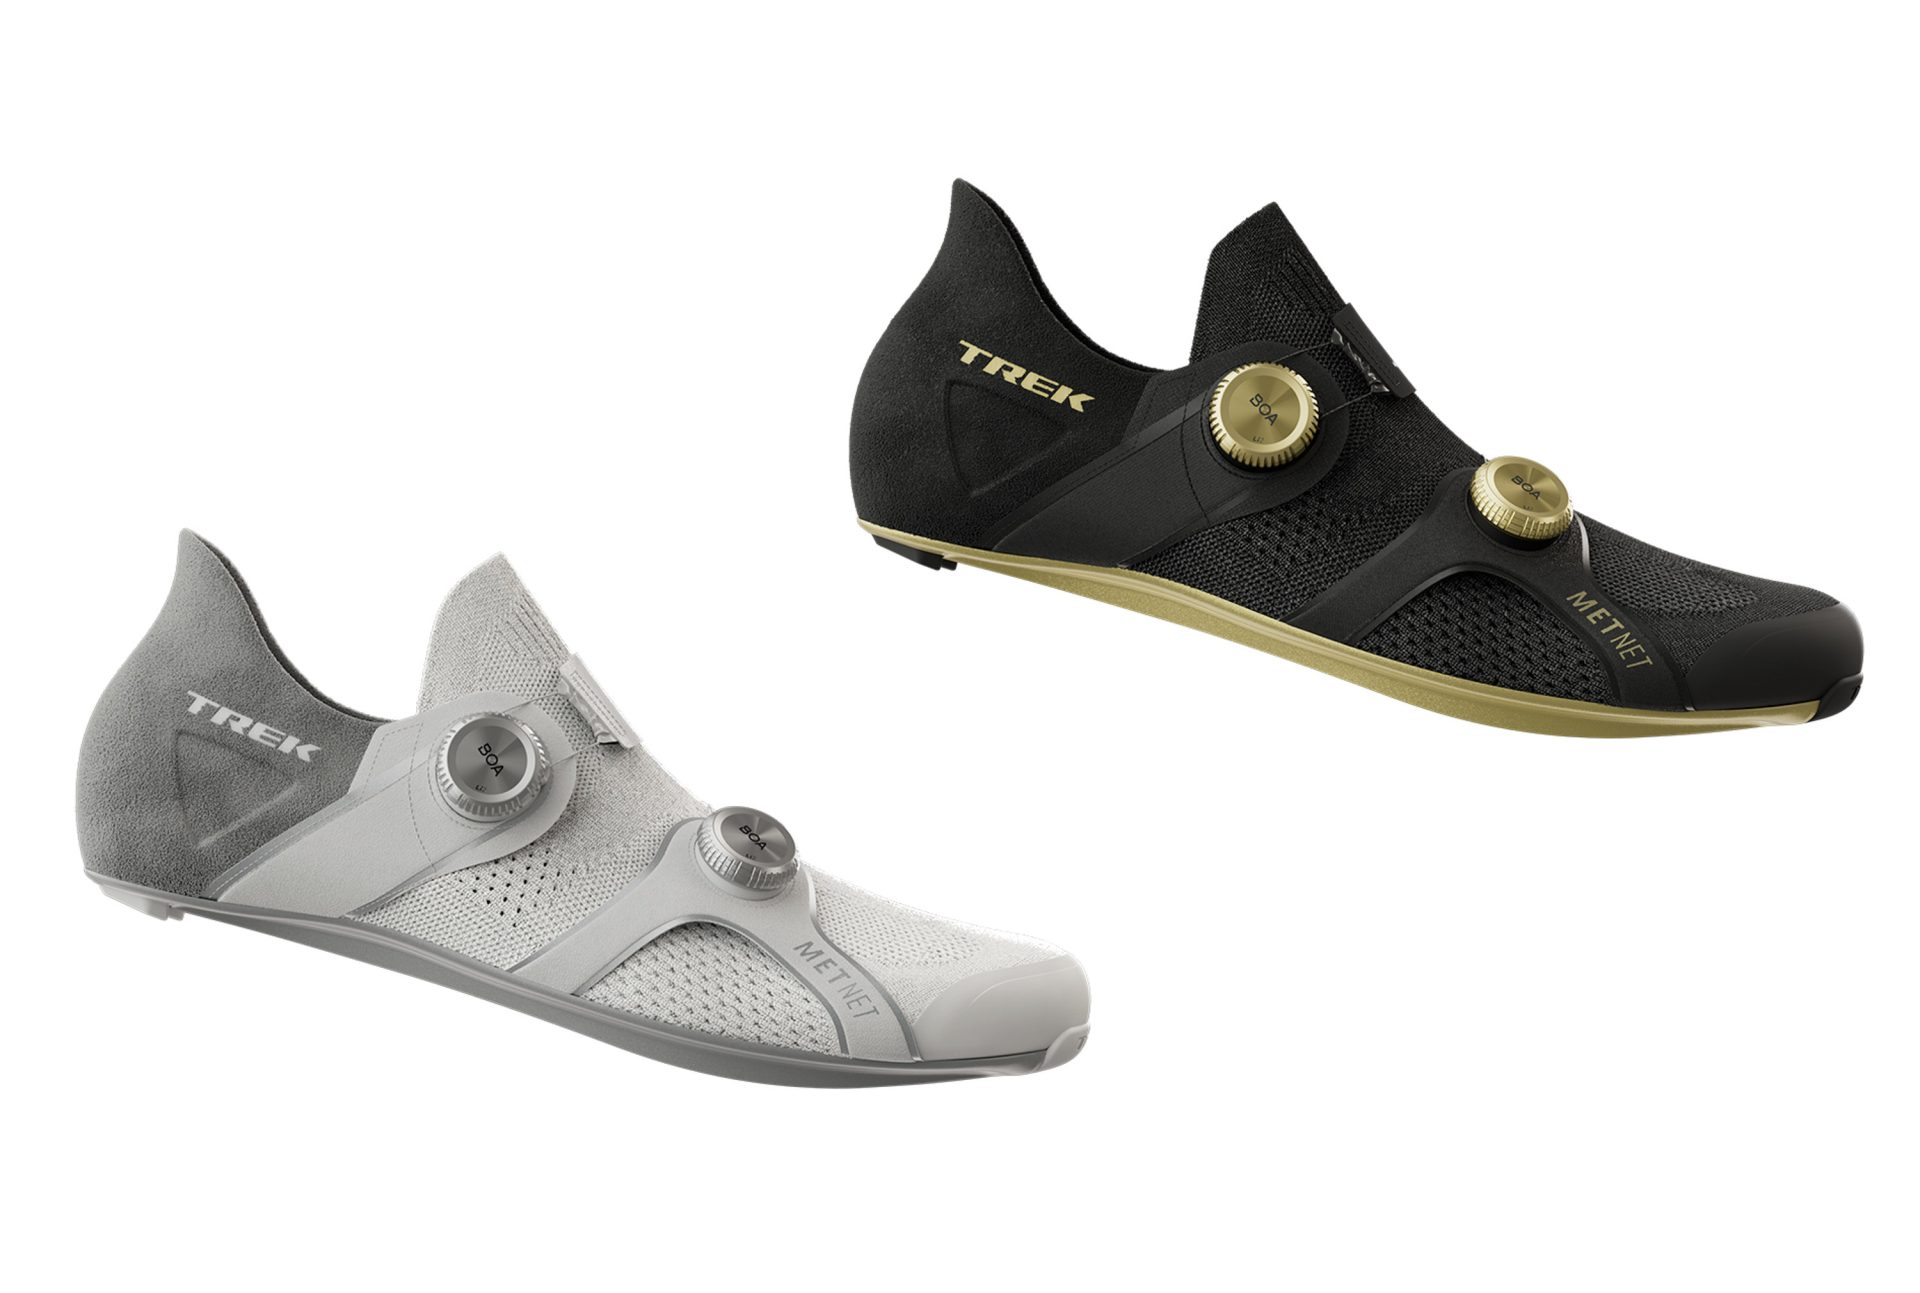 Trek RSL Knit road shoe color options